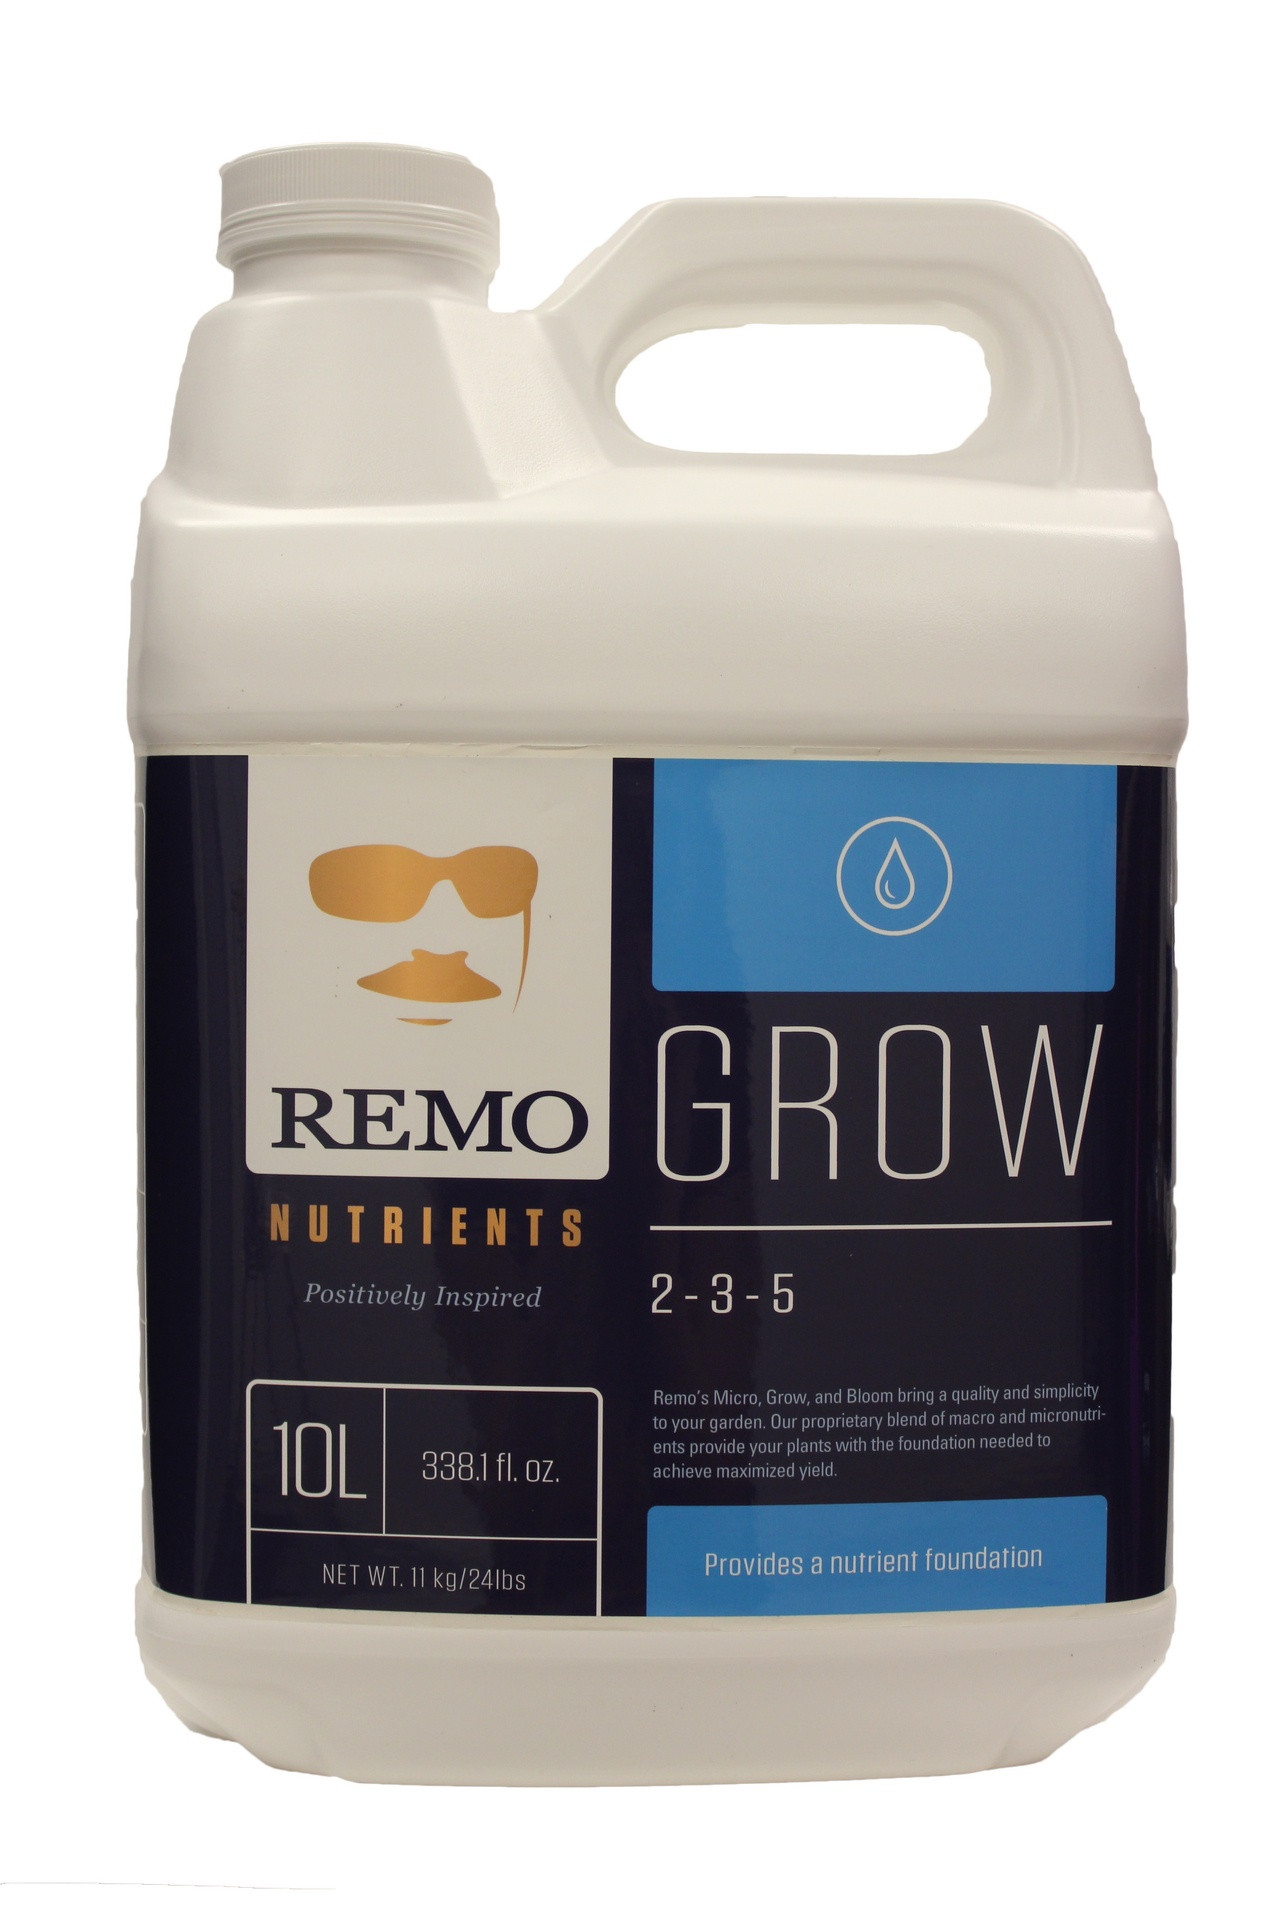 REMO GROW 10 LITRE